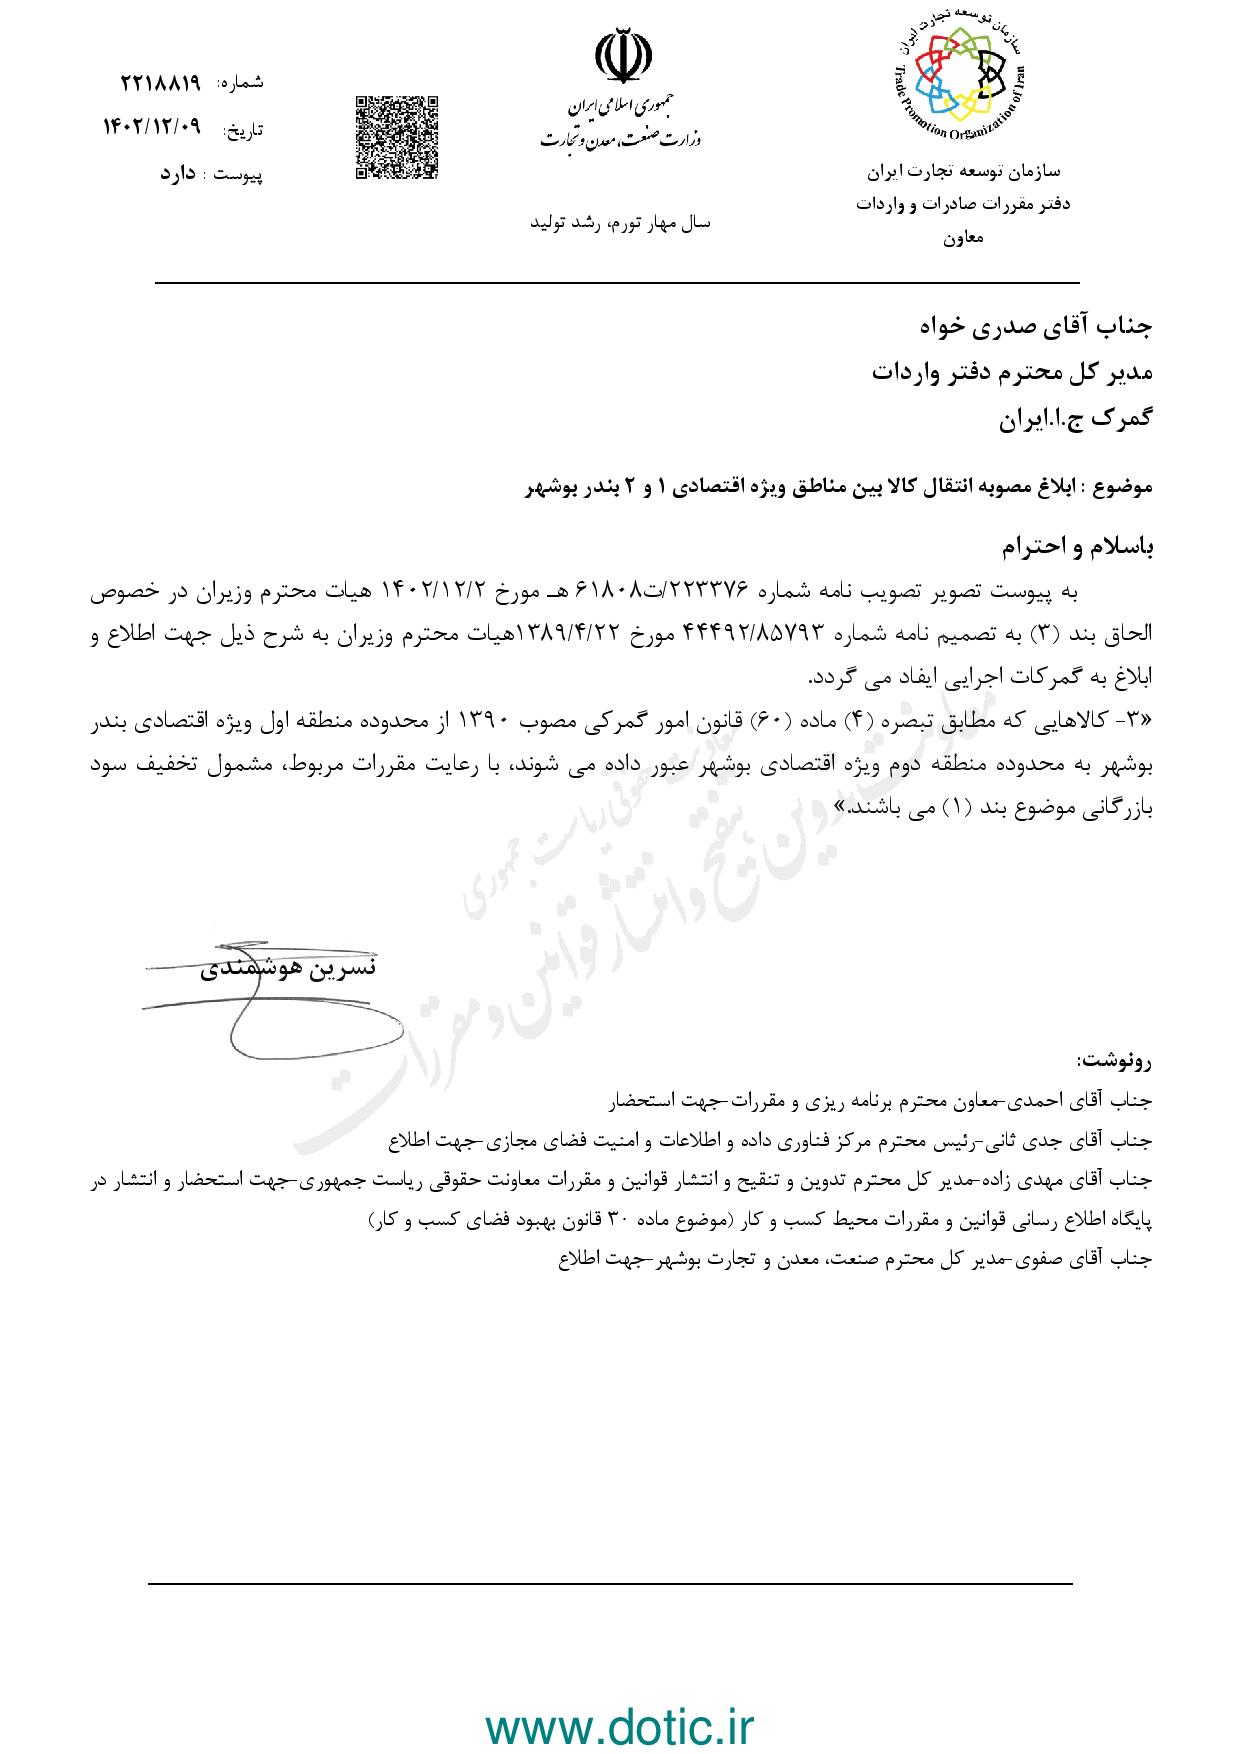 ابلاغ مصوبه انتقال کالا بین مناطق ویژه اقتصادی 1 و 2 بندر بوشهر